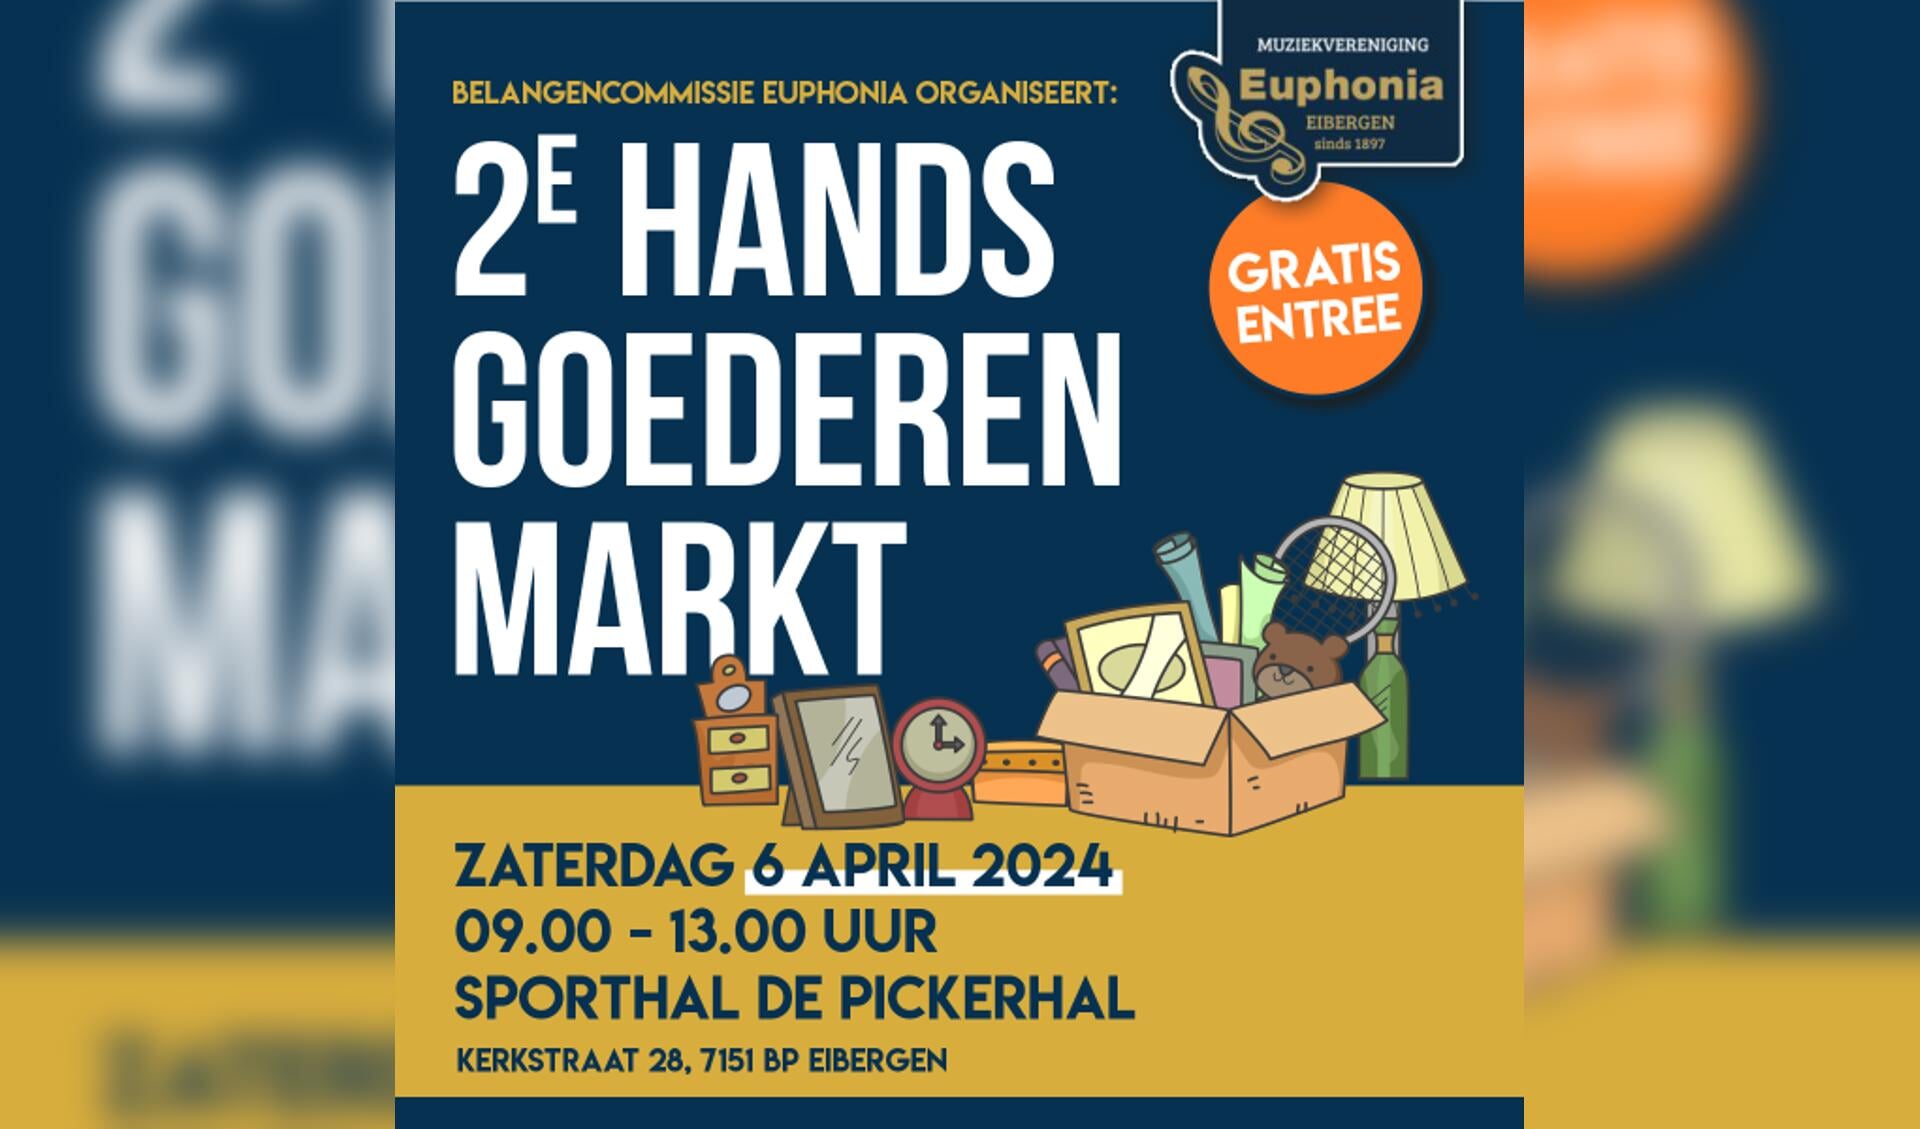 De tweedehandsgoederenmarkt van Euphonia is op 6 april in de Pickerhal. Foto: PR